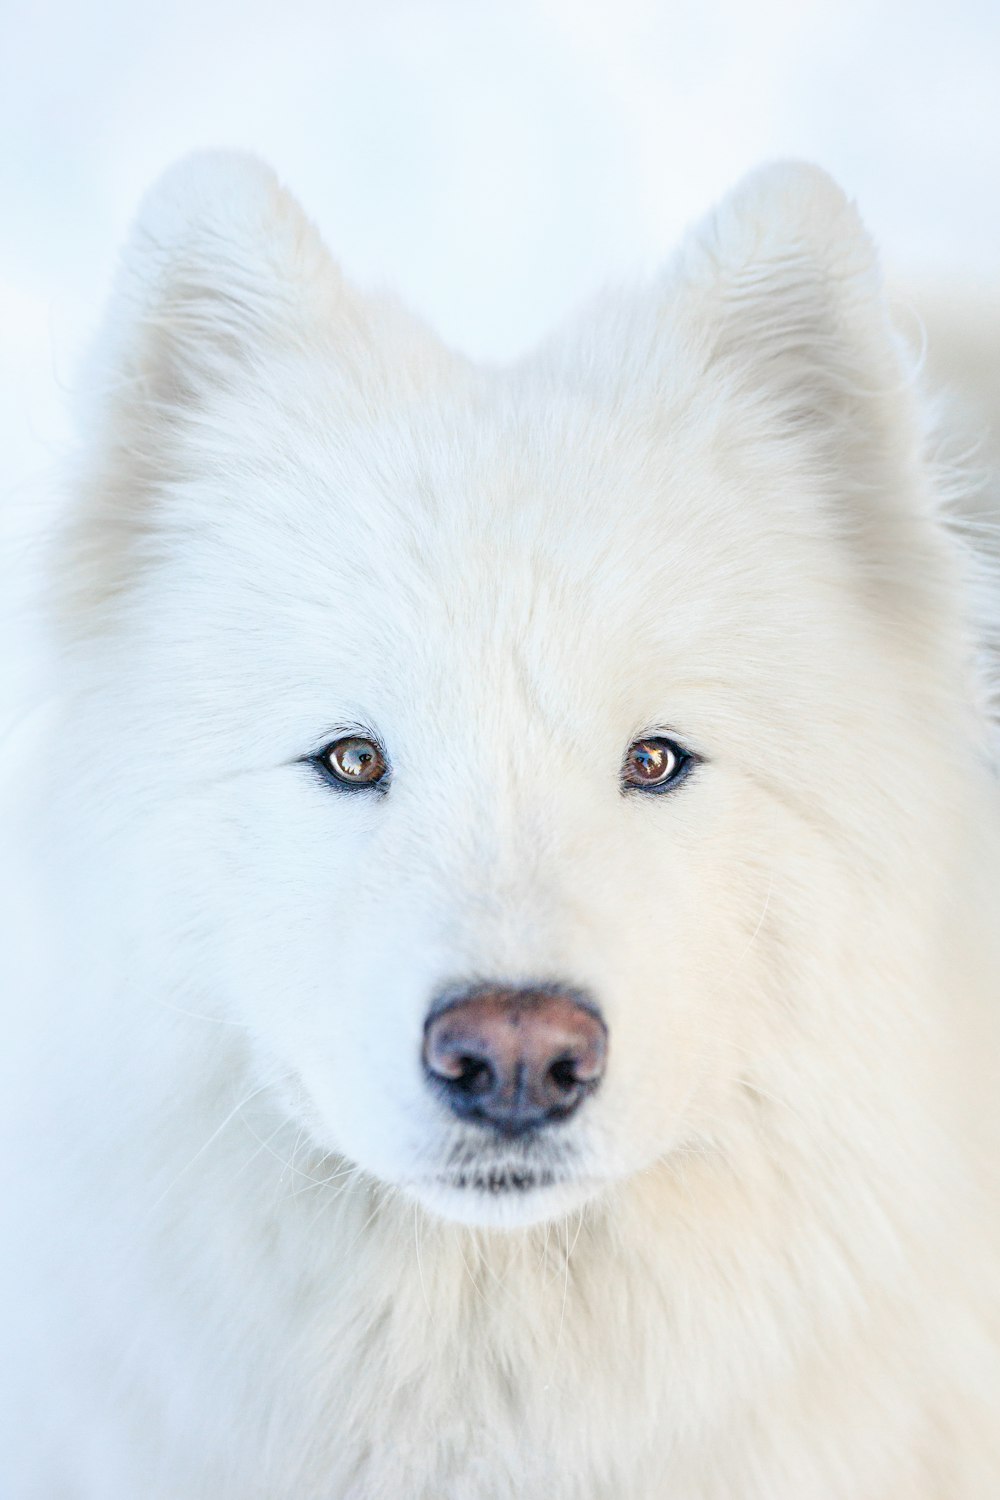 Nahaufnahme eines weißen Hundes mit blauen Augen